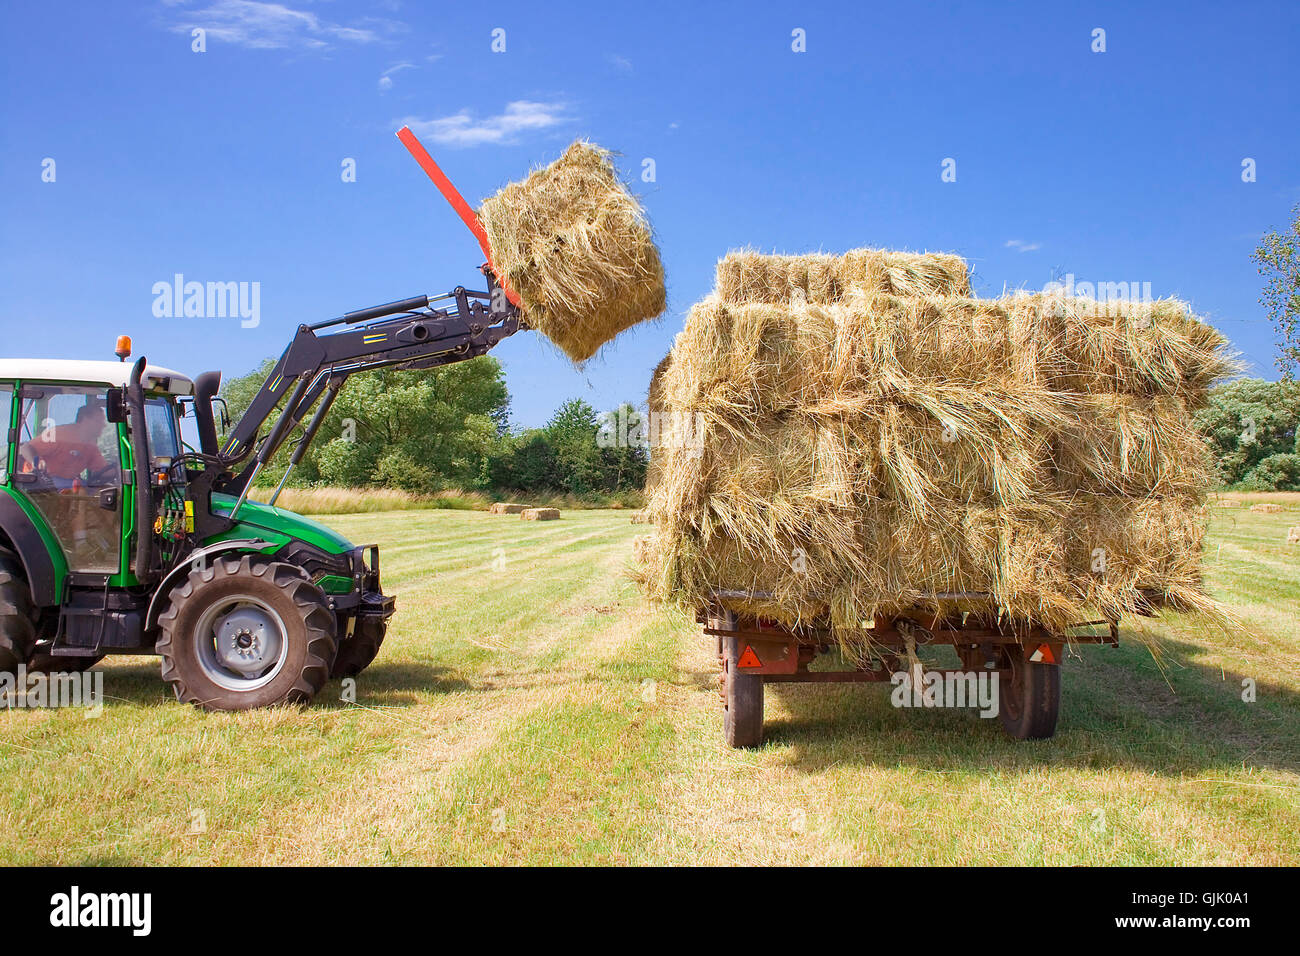 seek hay Stock Photo